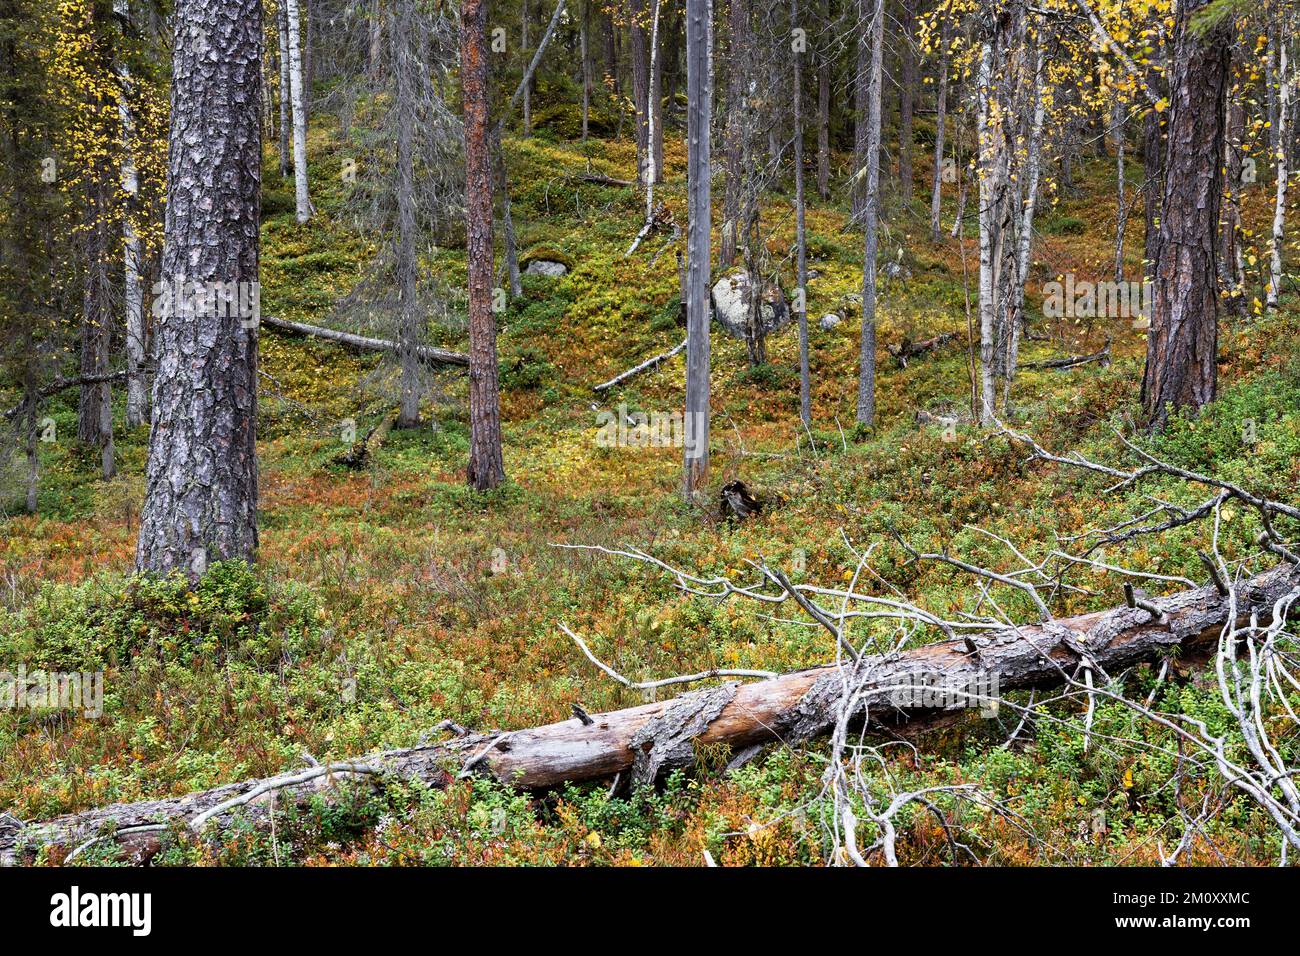 Un vieux bois d'automne avec bois mort sur le sol de la forêt dans le parc national d'Oulanka, dans le nord de la Finlande Banque D'Images